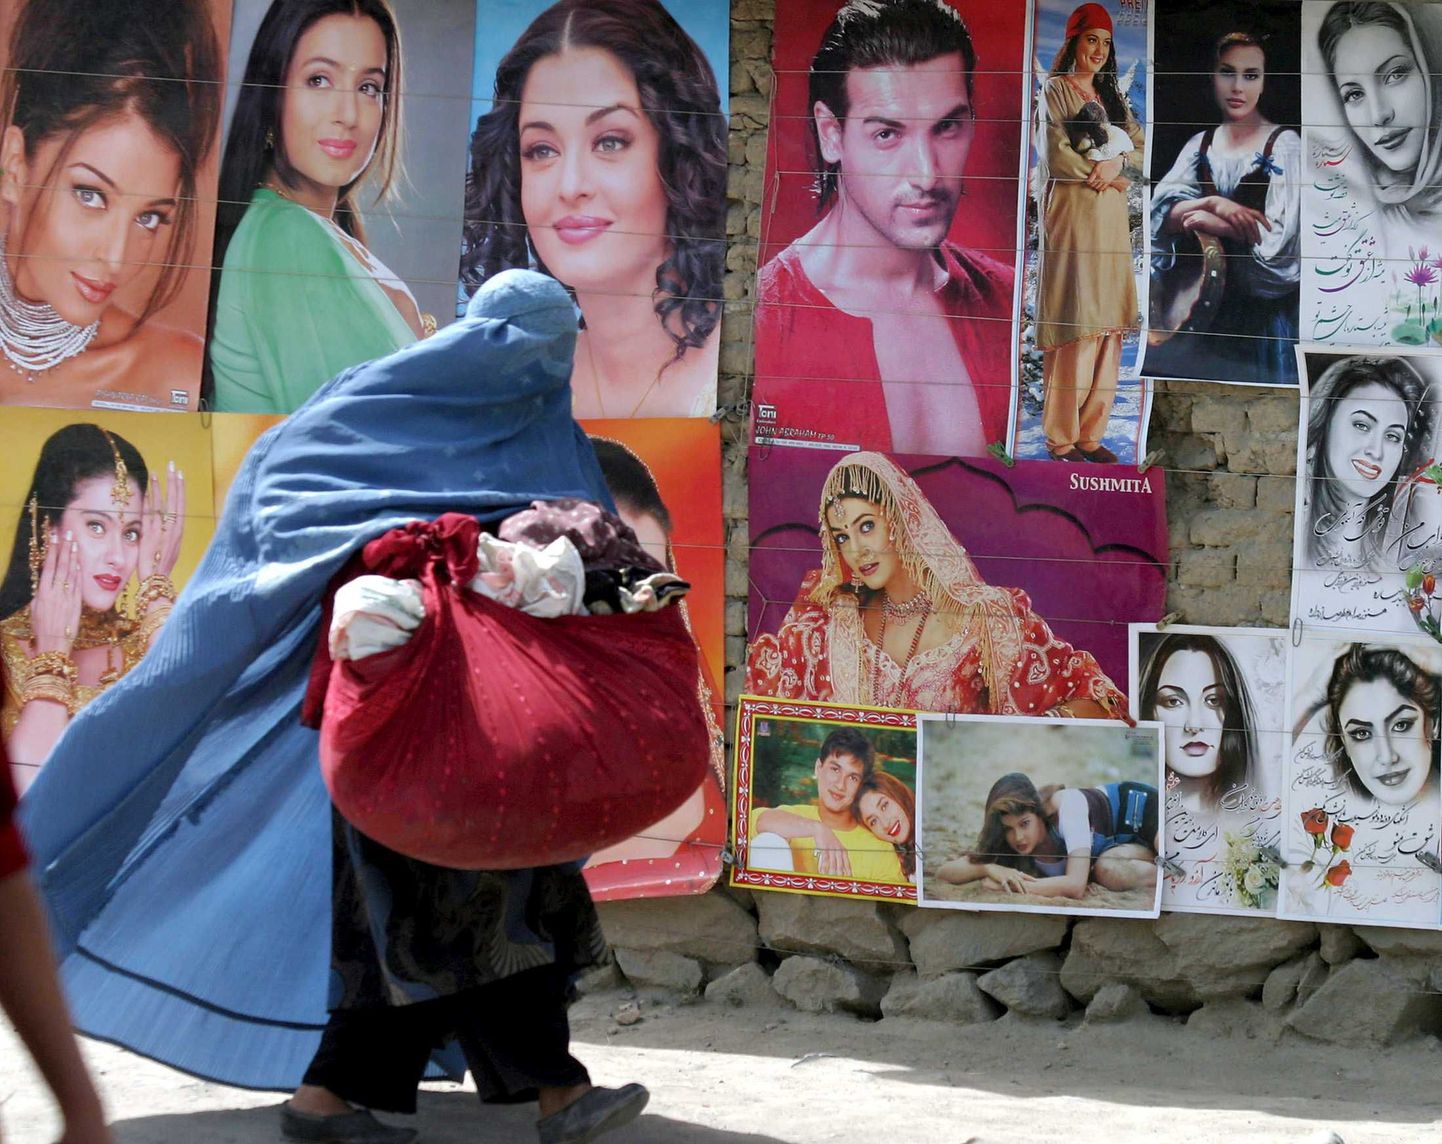 Afgaani naine möödumas Bollywoodi näitlejate plakatitest.